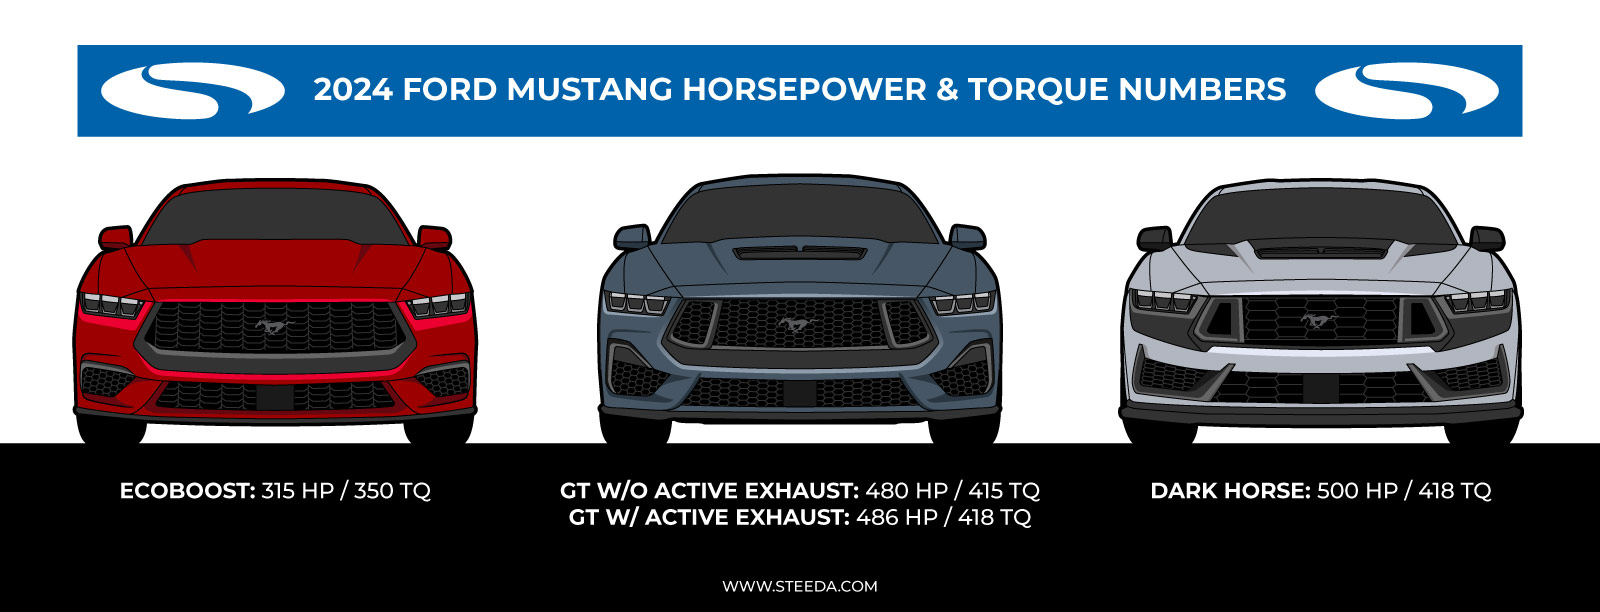 2024 Mustang Horsepower & Torque Specs - Steeda